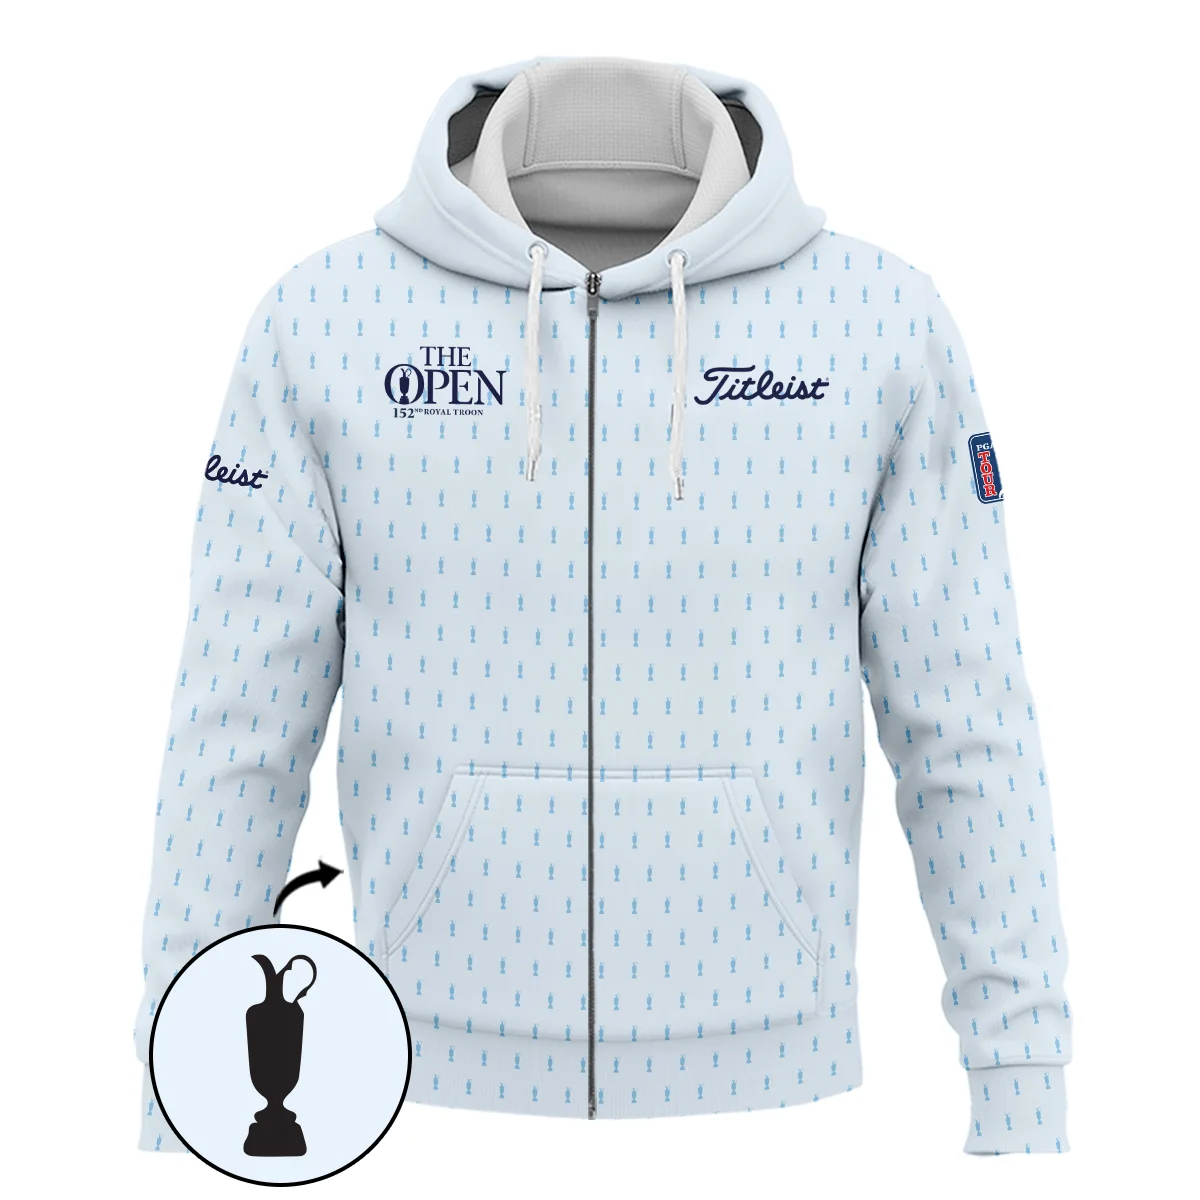 Golf Sport Light Blue Pattern Cup 152nd Open Championship Titleist Zipper Polo Shirt All Over Prints QTTOP160624A01TLZPL